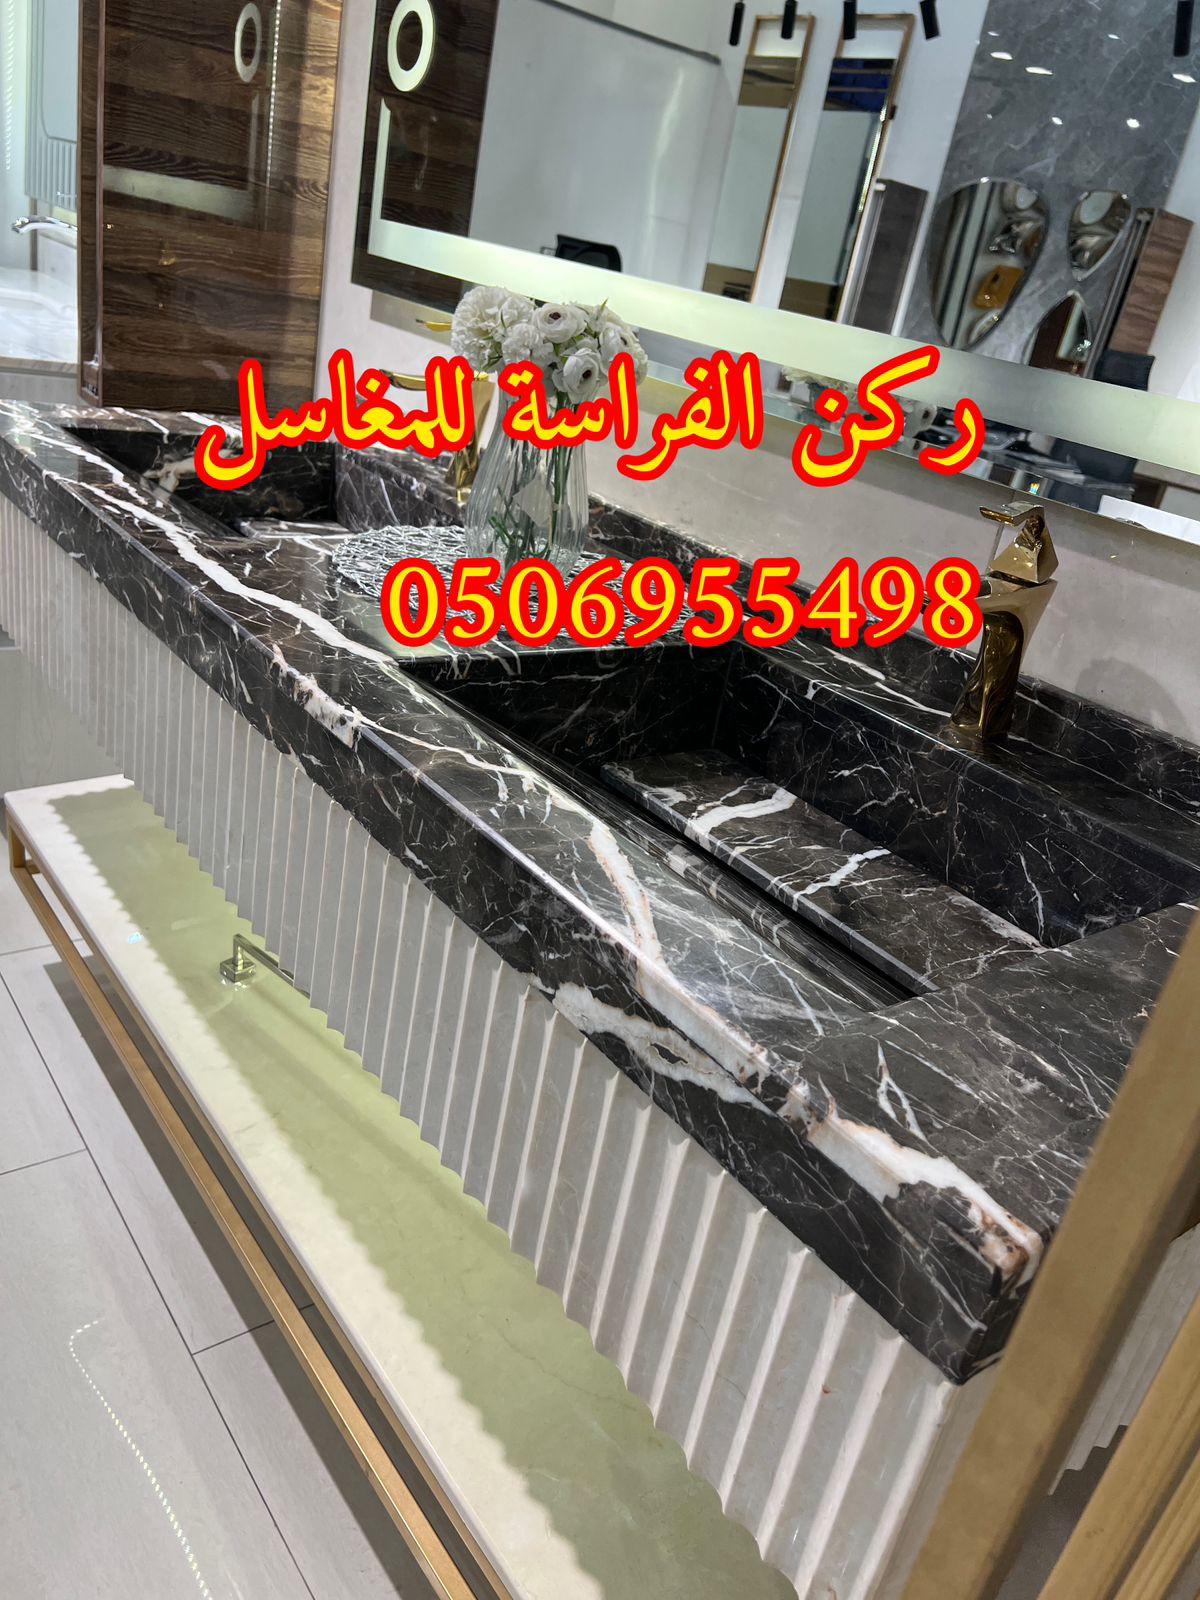 تصاميم مغاسل رخام للمجالس في الرياض,0506955498 867719158